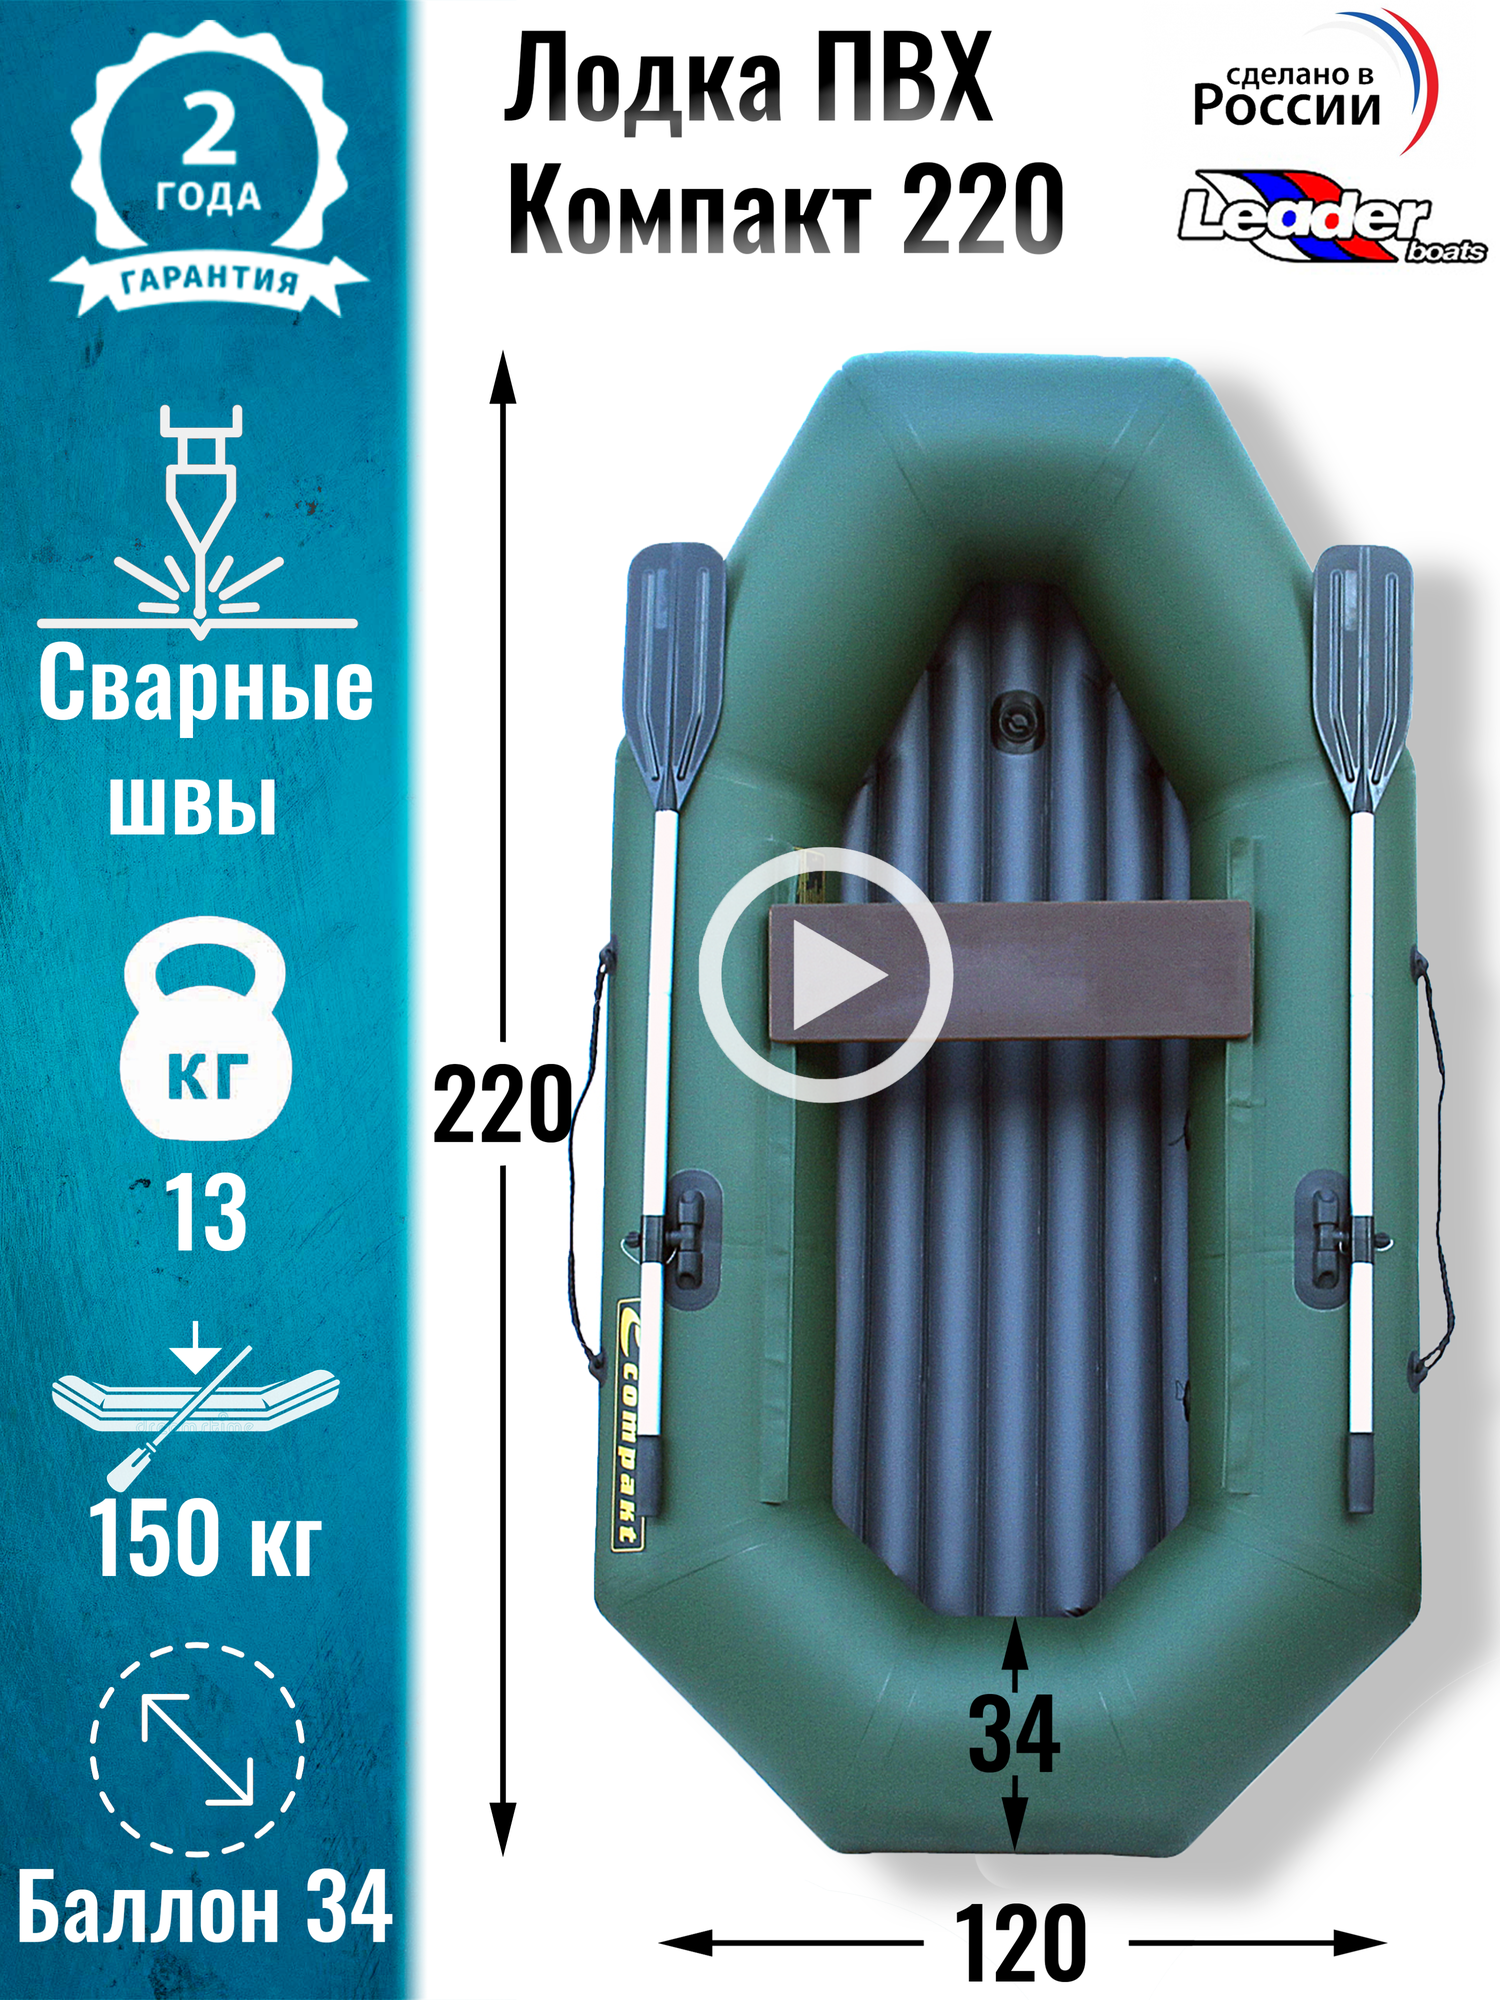 Leader boats/Надувная лодка ПВХ Компакт 220 надувное дно (зеленая)